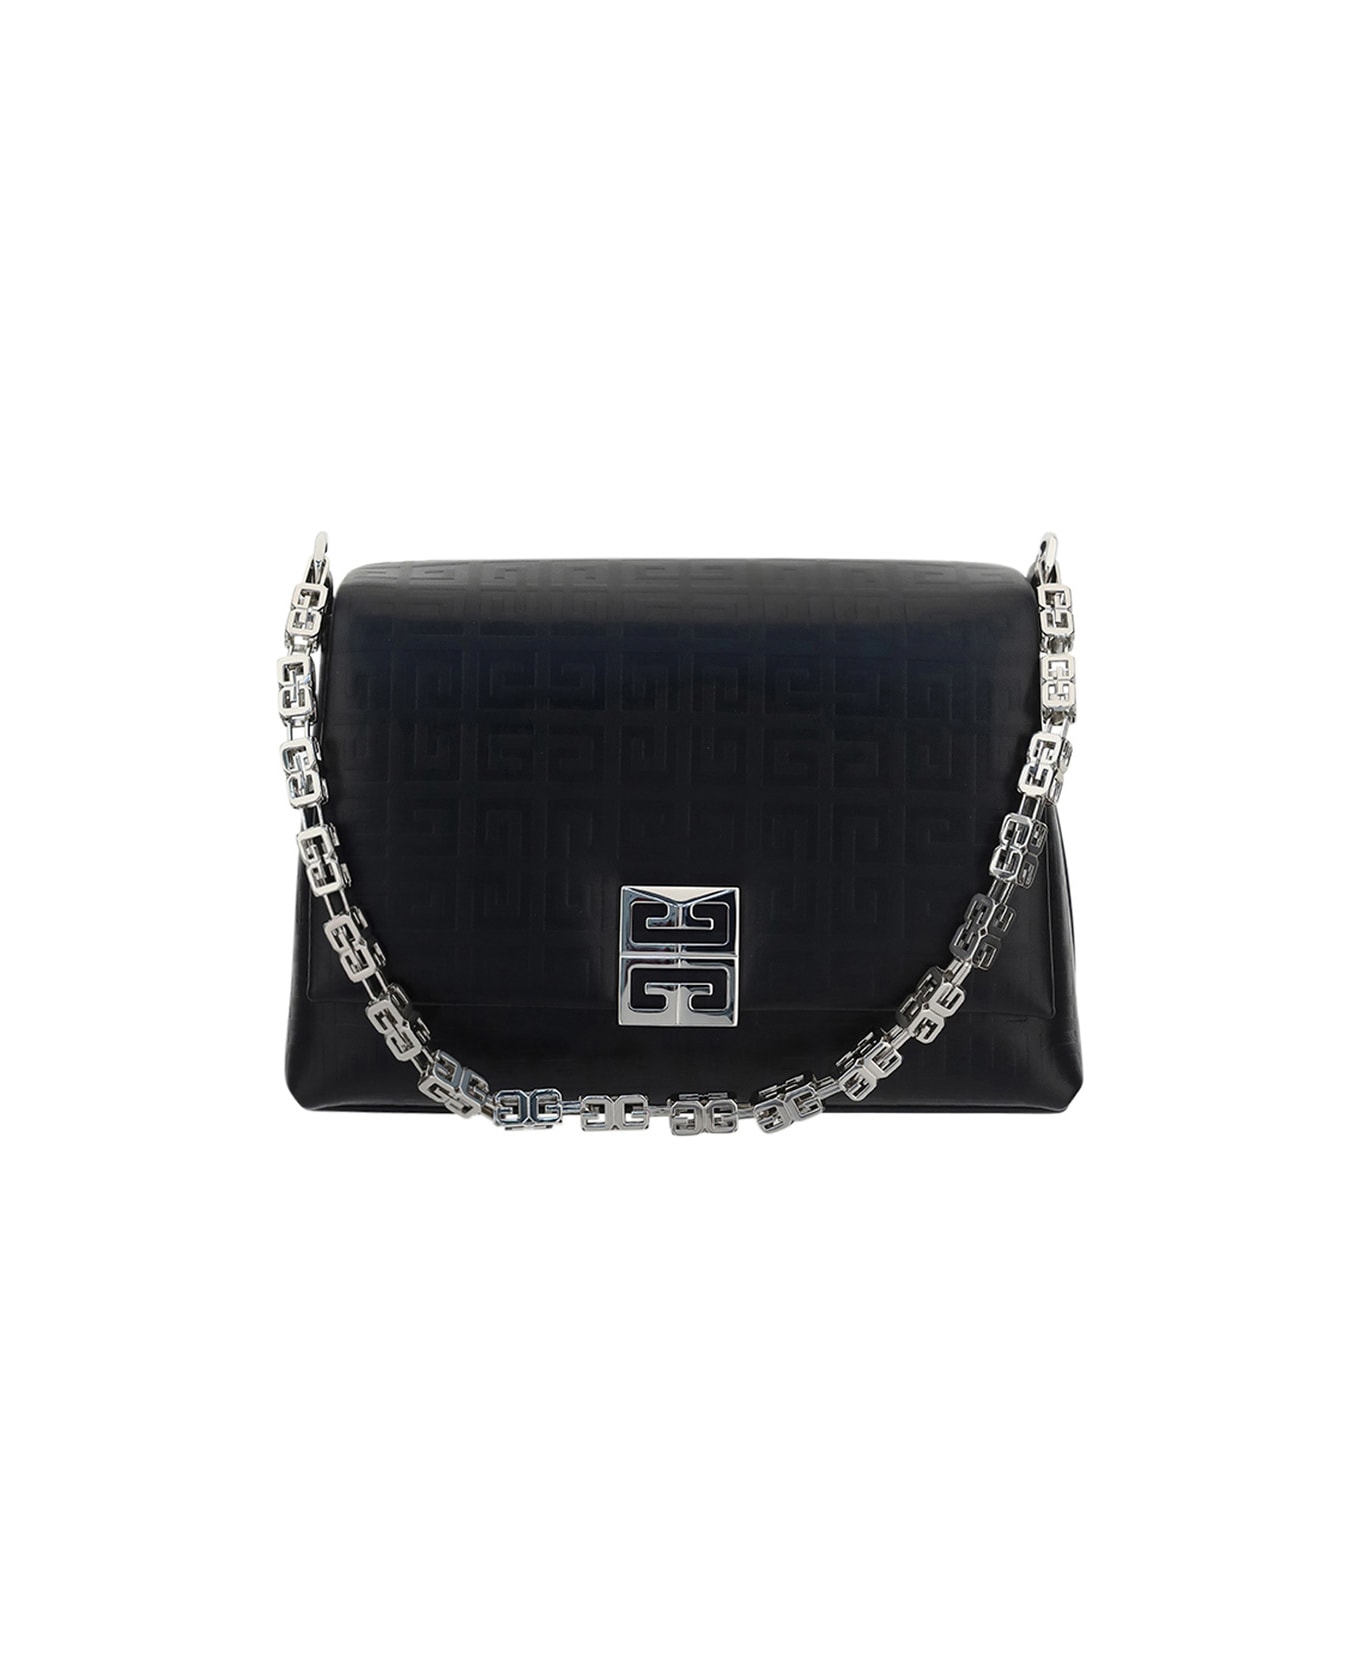 Givenchy 4g Soft Bag - Black